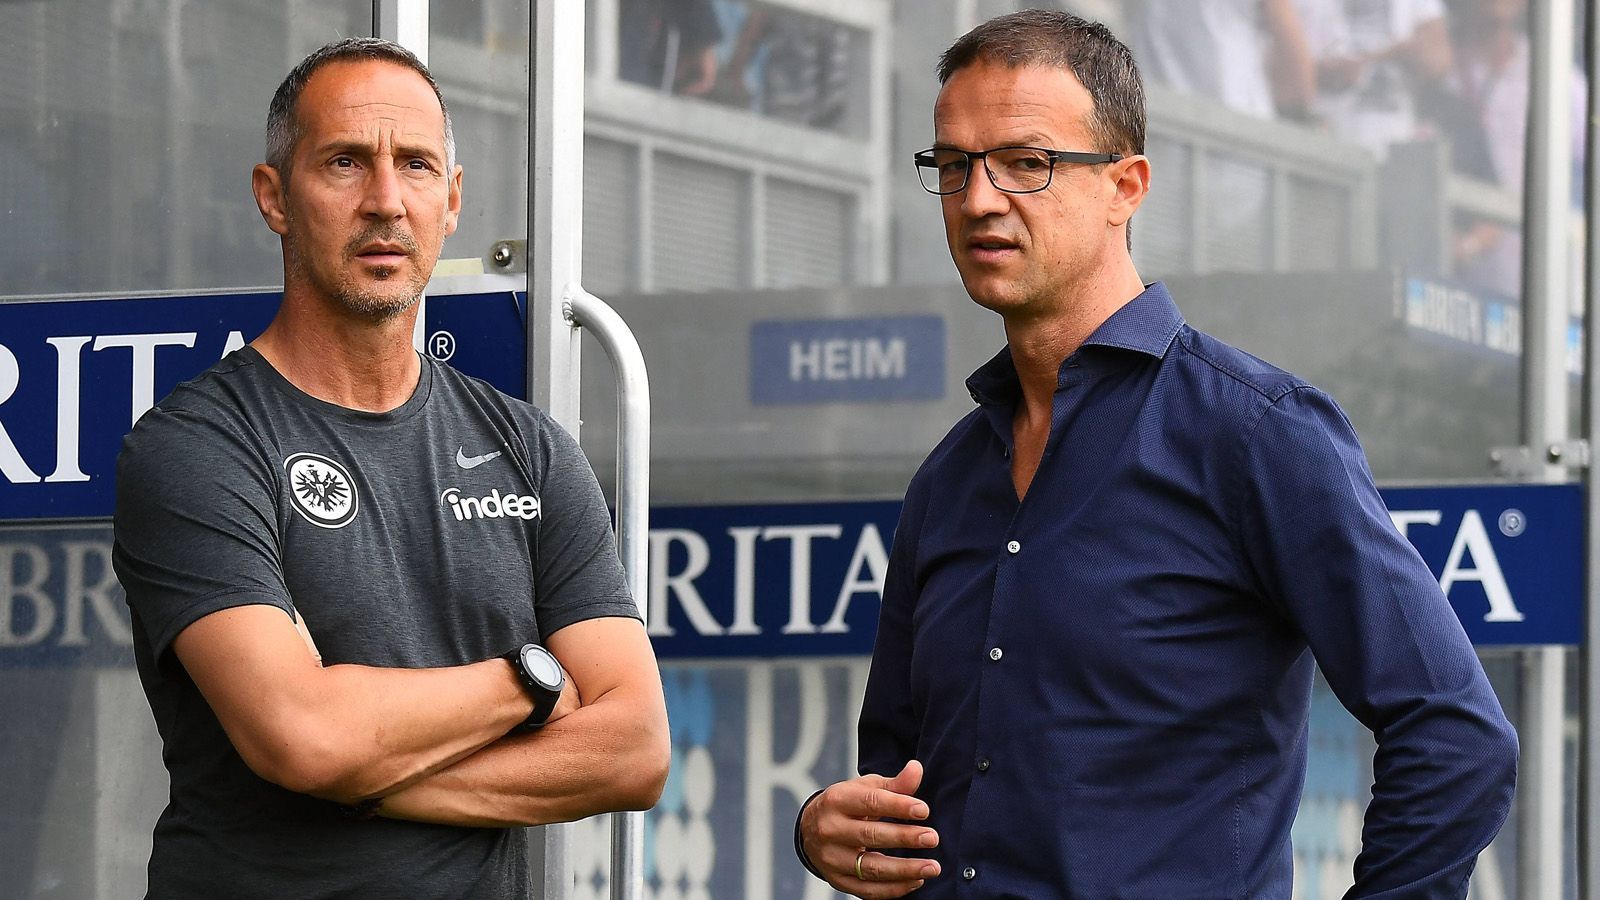 
                <strong>Eintracht Frankfurt</strong><br>
                Ähnlich handhaben es auch Manager Fredi Bobic (rechts) und Trainer Adi Hütter (links) bei Eintracht Frankfurt. Während des Essens und bei Besprechungen gilt ein Handy-Verbot, ansonsten ist den Spielern der Umgang mit dem Smartphone grundsätzlich gestattet.
              